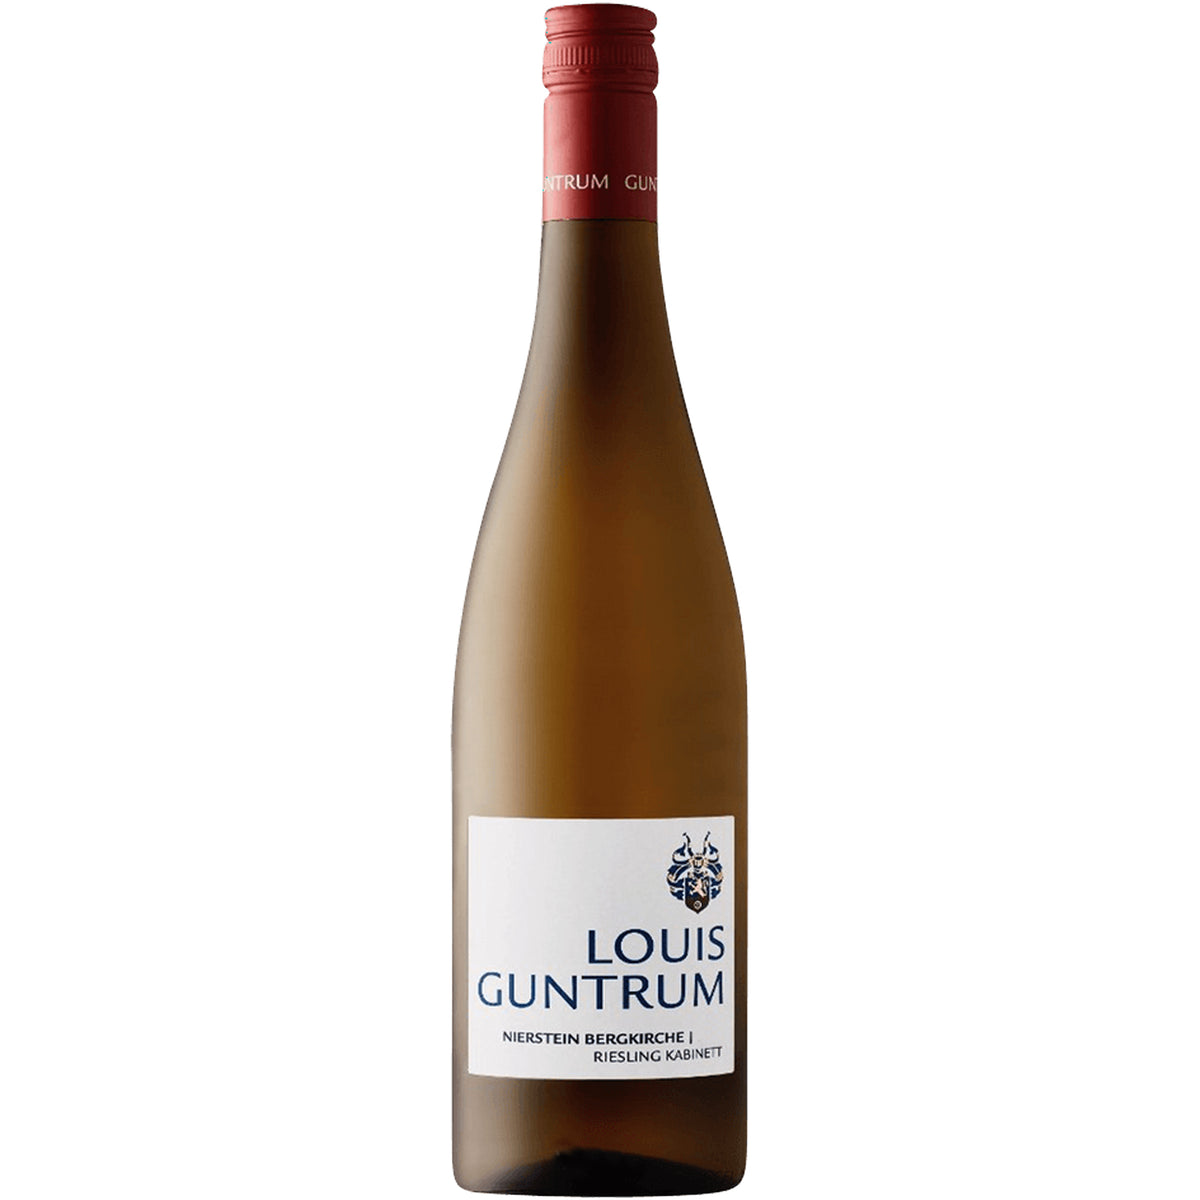 Louis Guntrum - winegrower in Rheinhessen